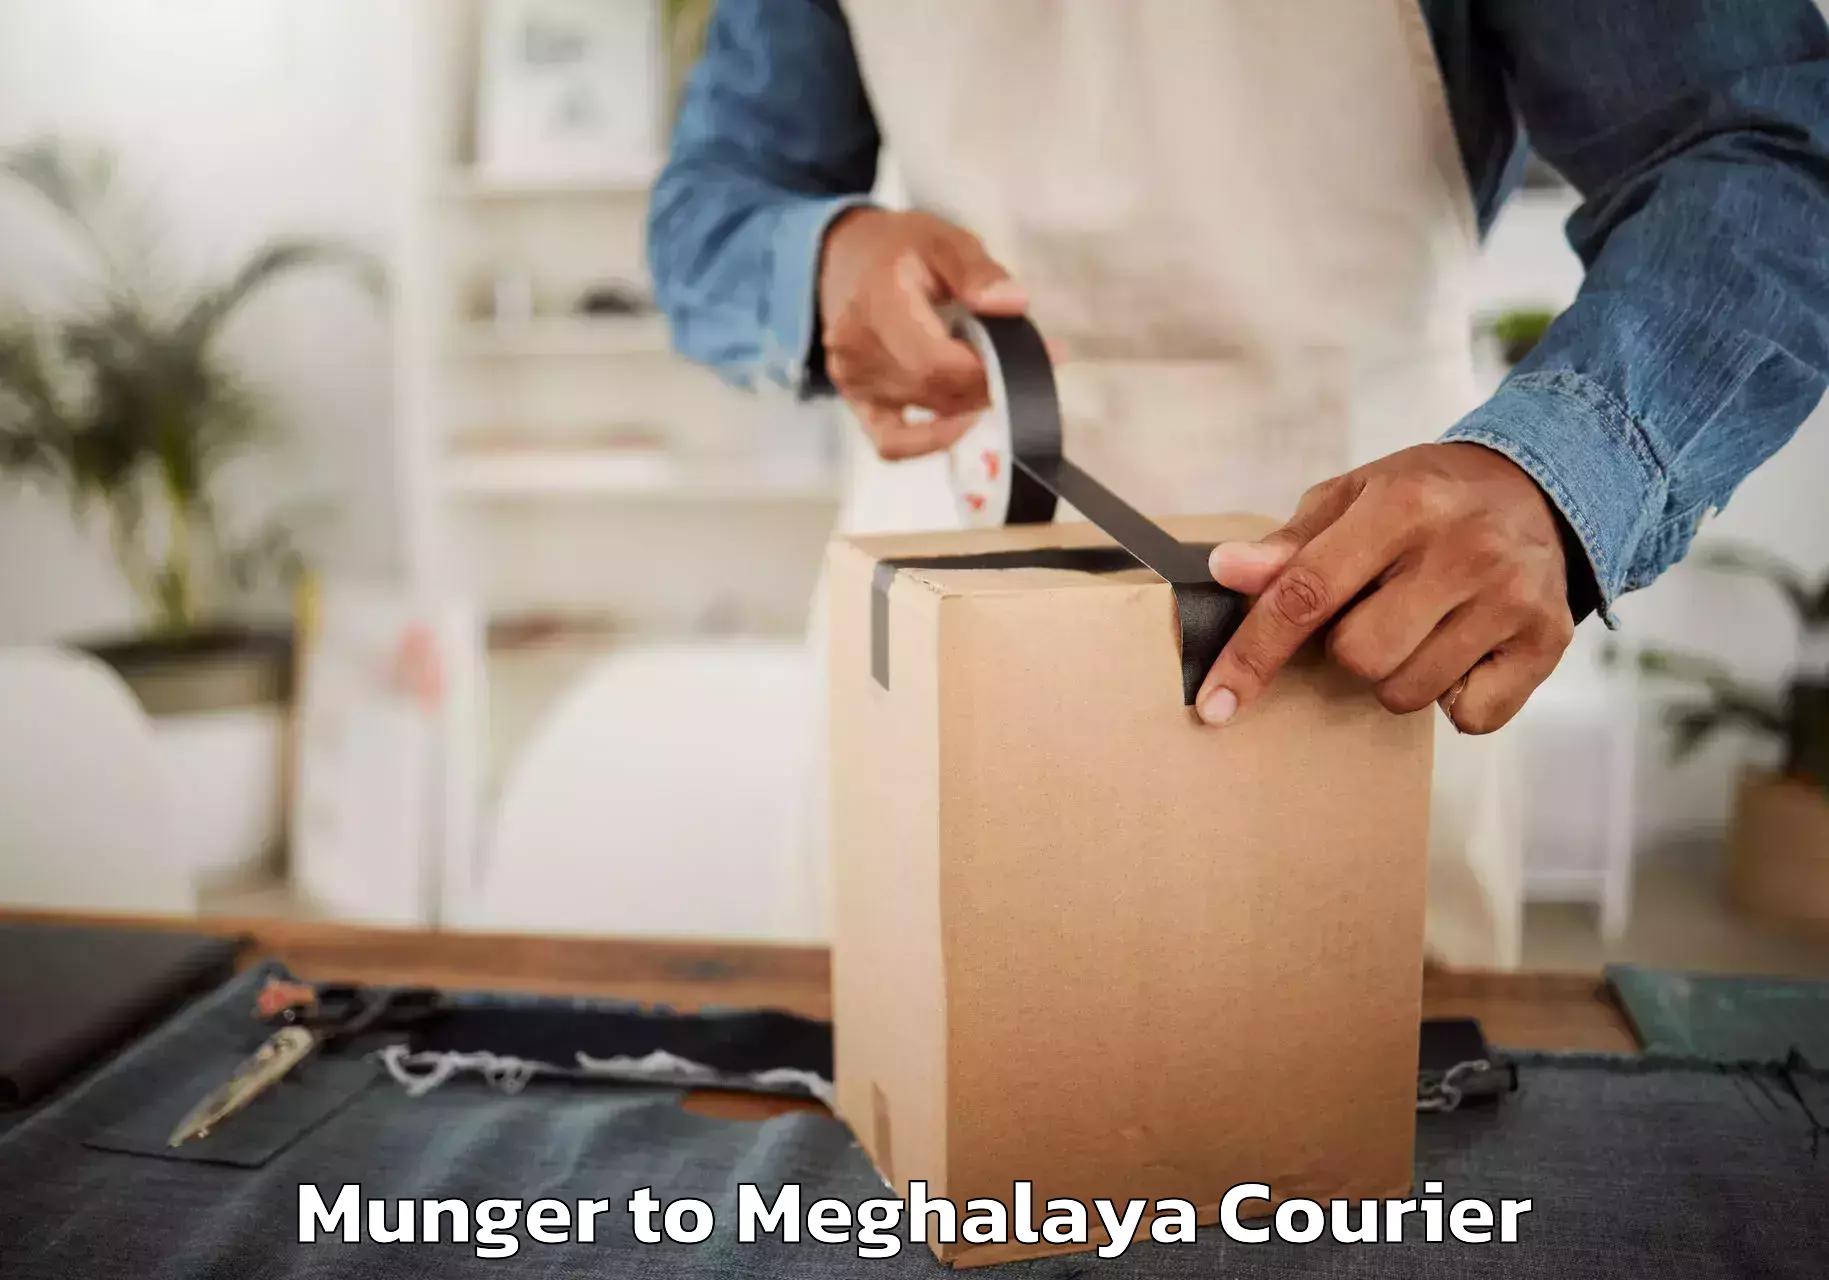 Furniture moving service Munger to Meghalaya